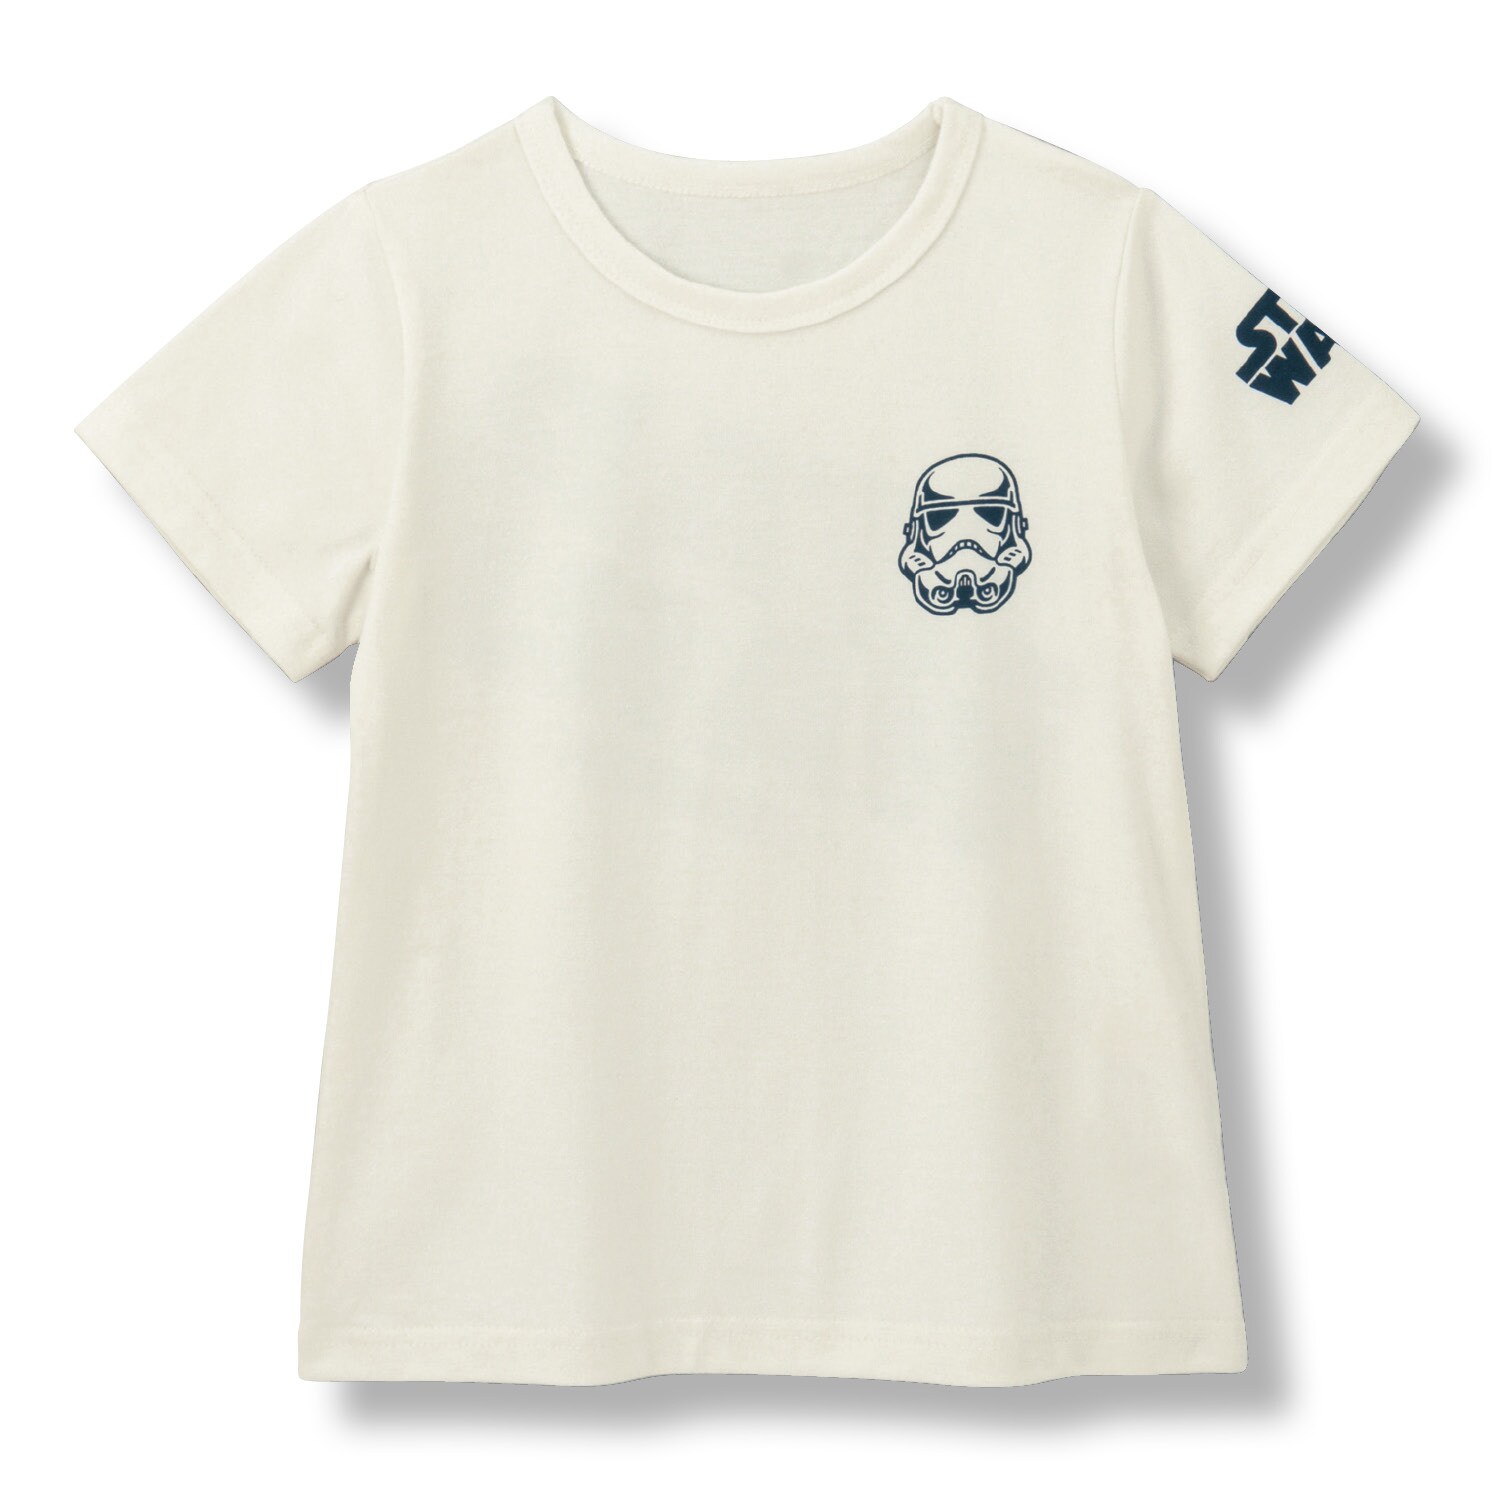 Kleding Unisex kinderkleding Tops & T-shirts Overhemden en buttondowns Abbey road Star Wars inspired size7 kids shirt 